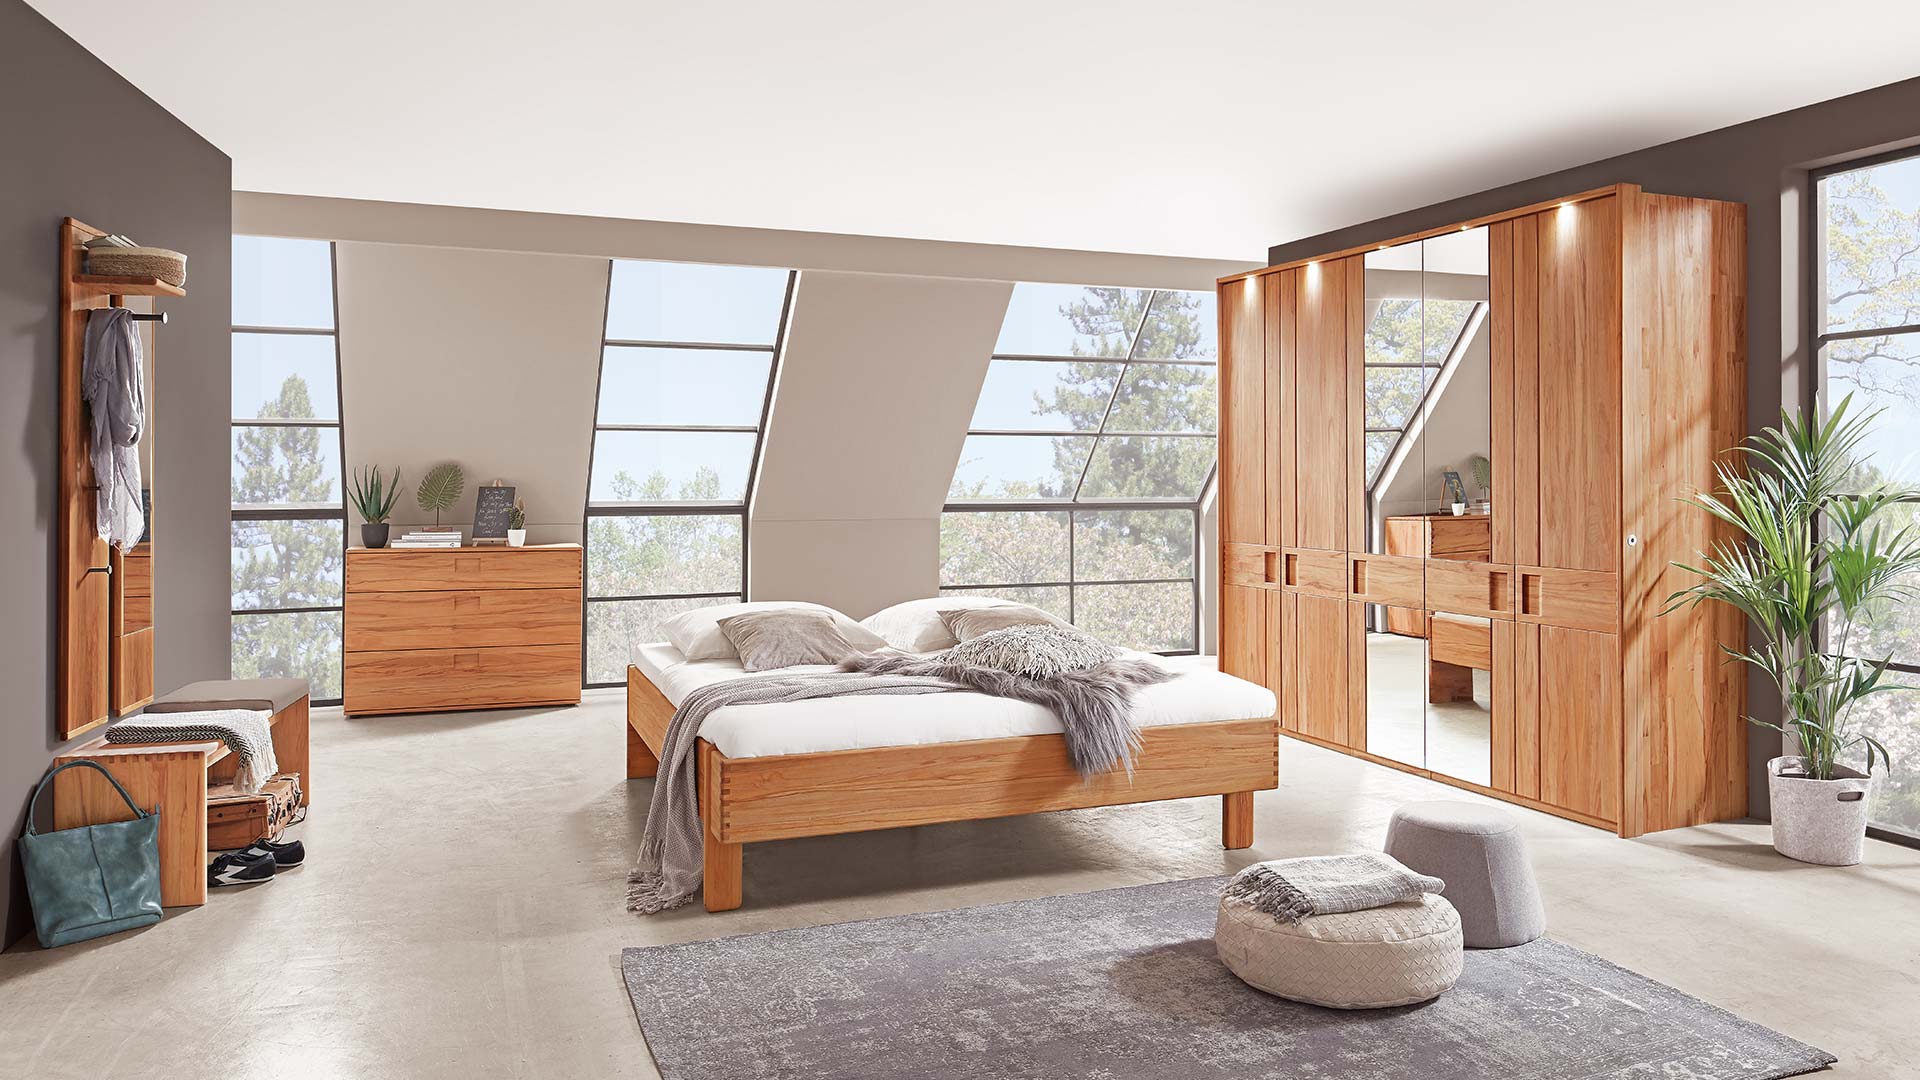 Schlafzimmersystem in einem beigen Schlafzimmer mit Massivholzbett in Eiche oder Buche mit Nachttisch, Kleiderschrank mit Spiegel und Kommode und Garderobe mit Spiegel.